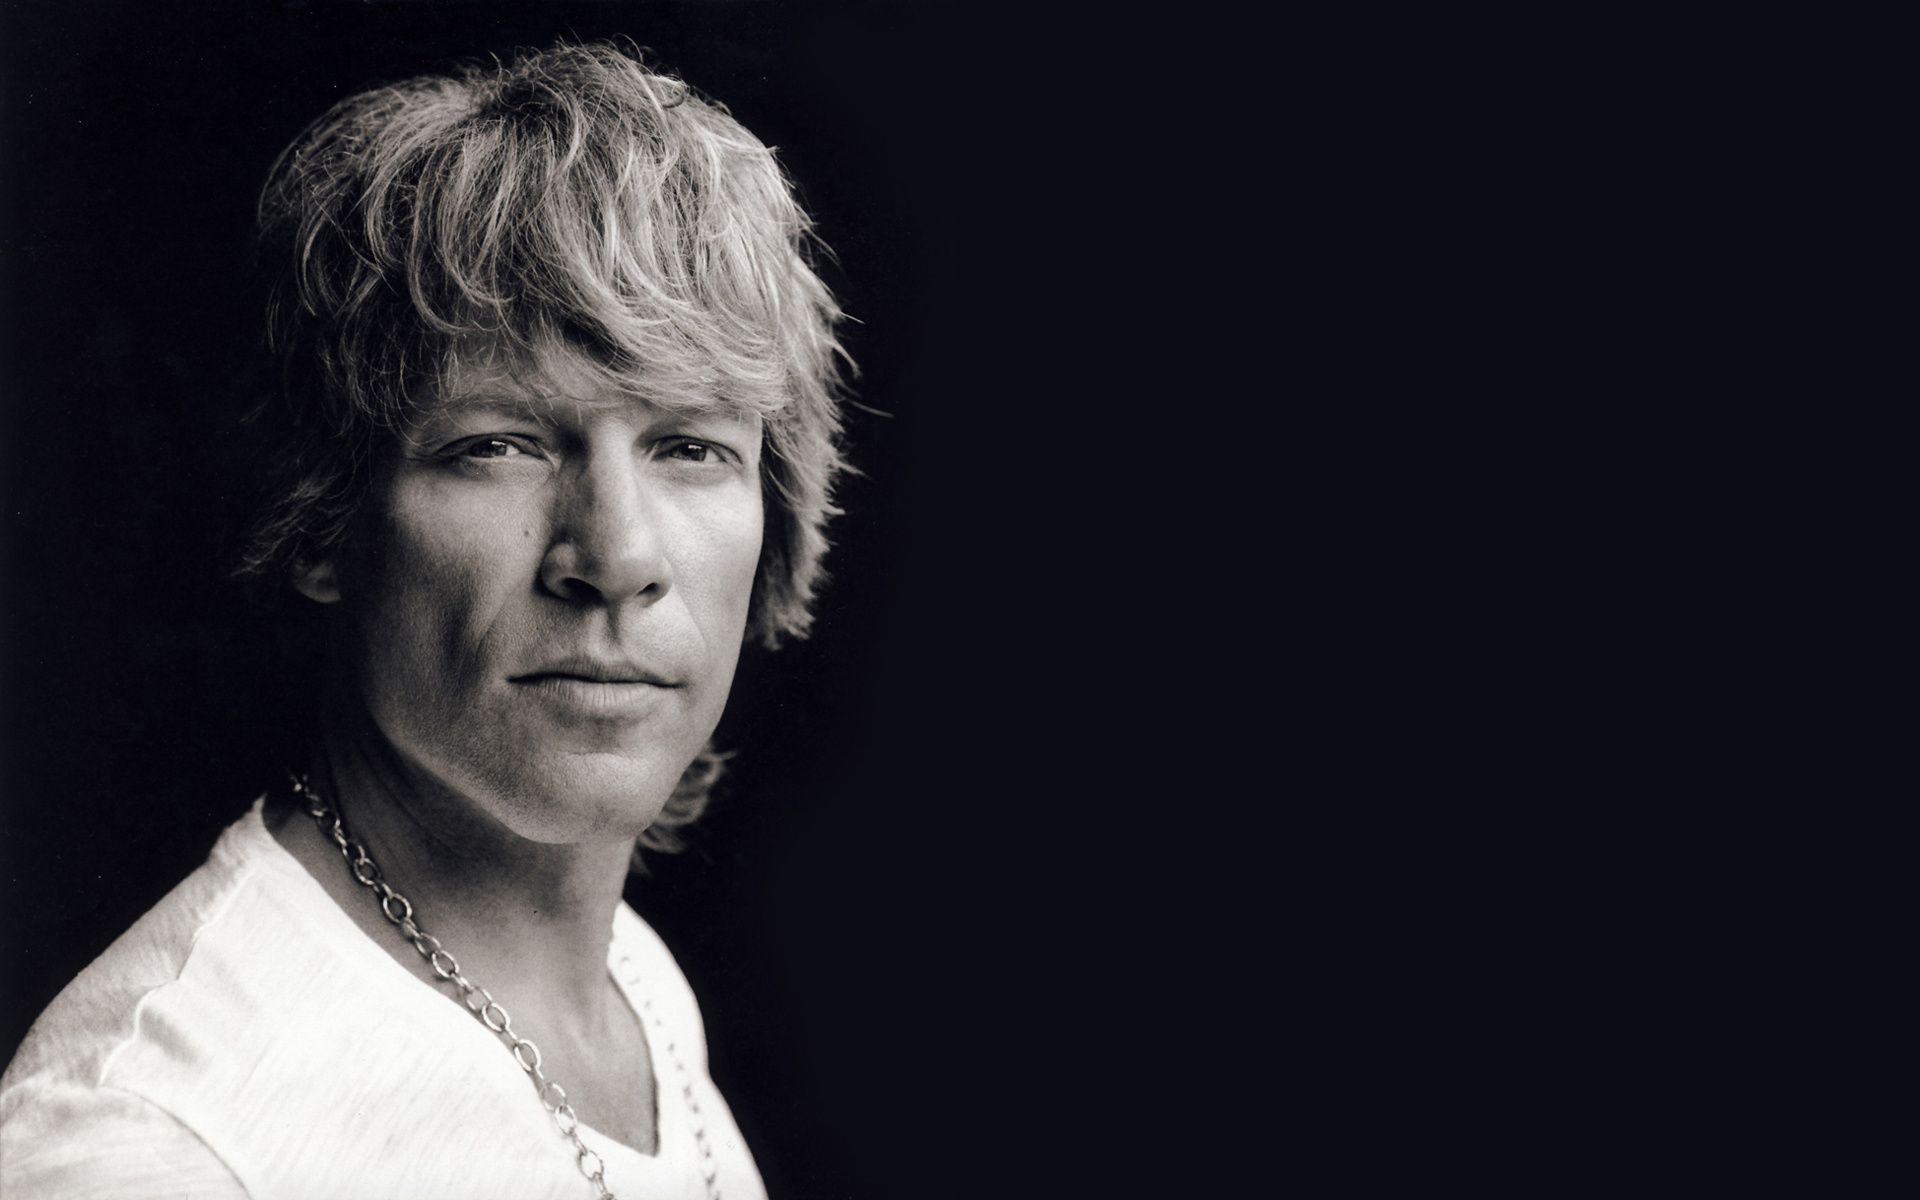 Fondos de pantalla de Bon Jovi. Wallpaper de Bon Jovi. Fondos